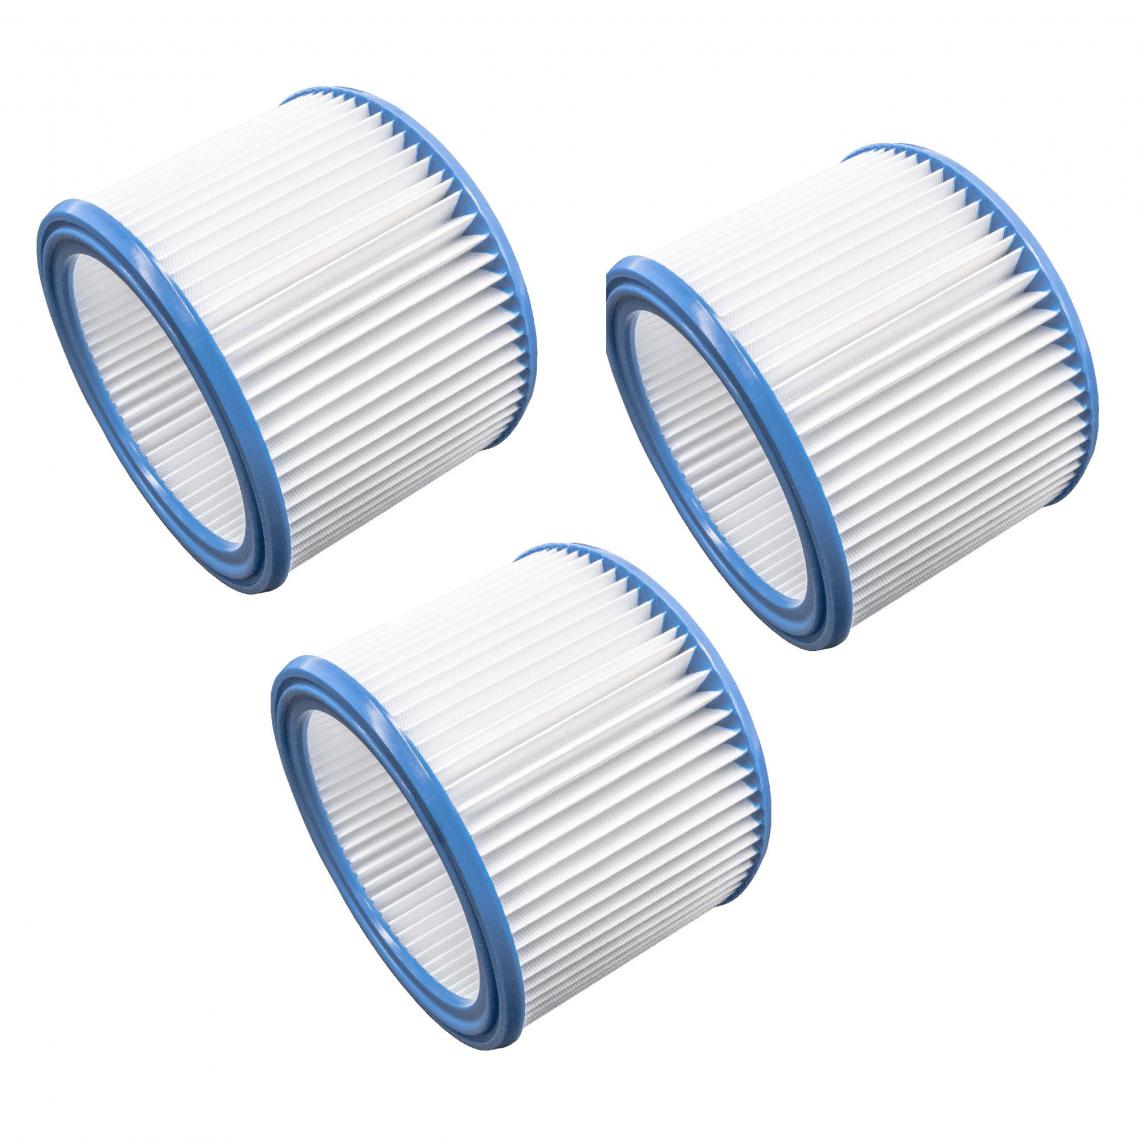 Vhbw - vhbw Set de filtres 3x Filtre plissé compatible avec Nilfisk Attix 50-2H PC / XC, 50-2M PC, 751-11 aspirateur à sec ou humide - Filtre à cartouche - Accessoire entretien des sols